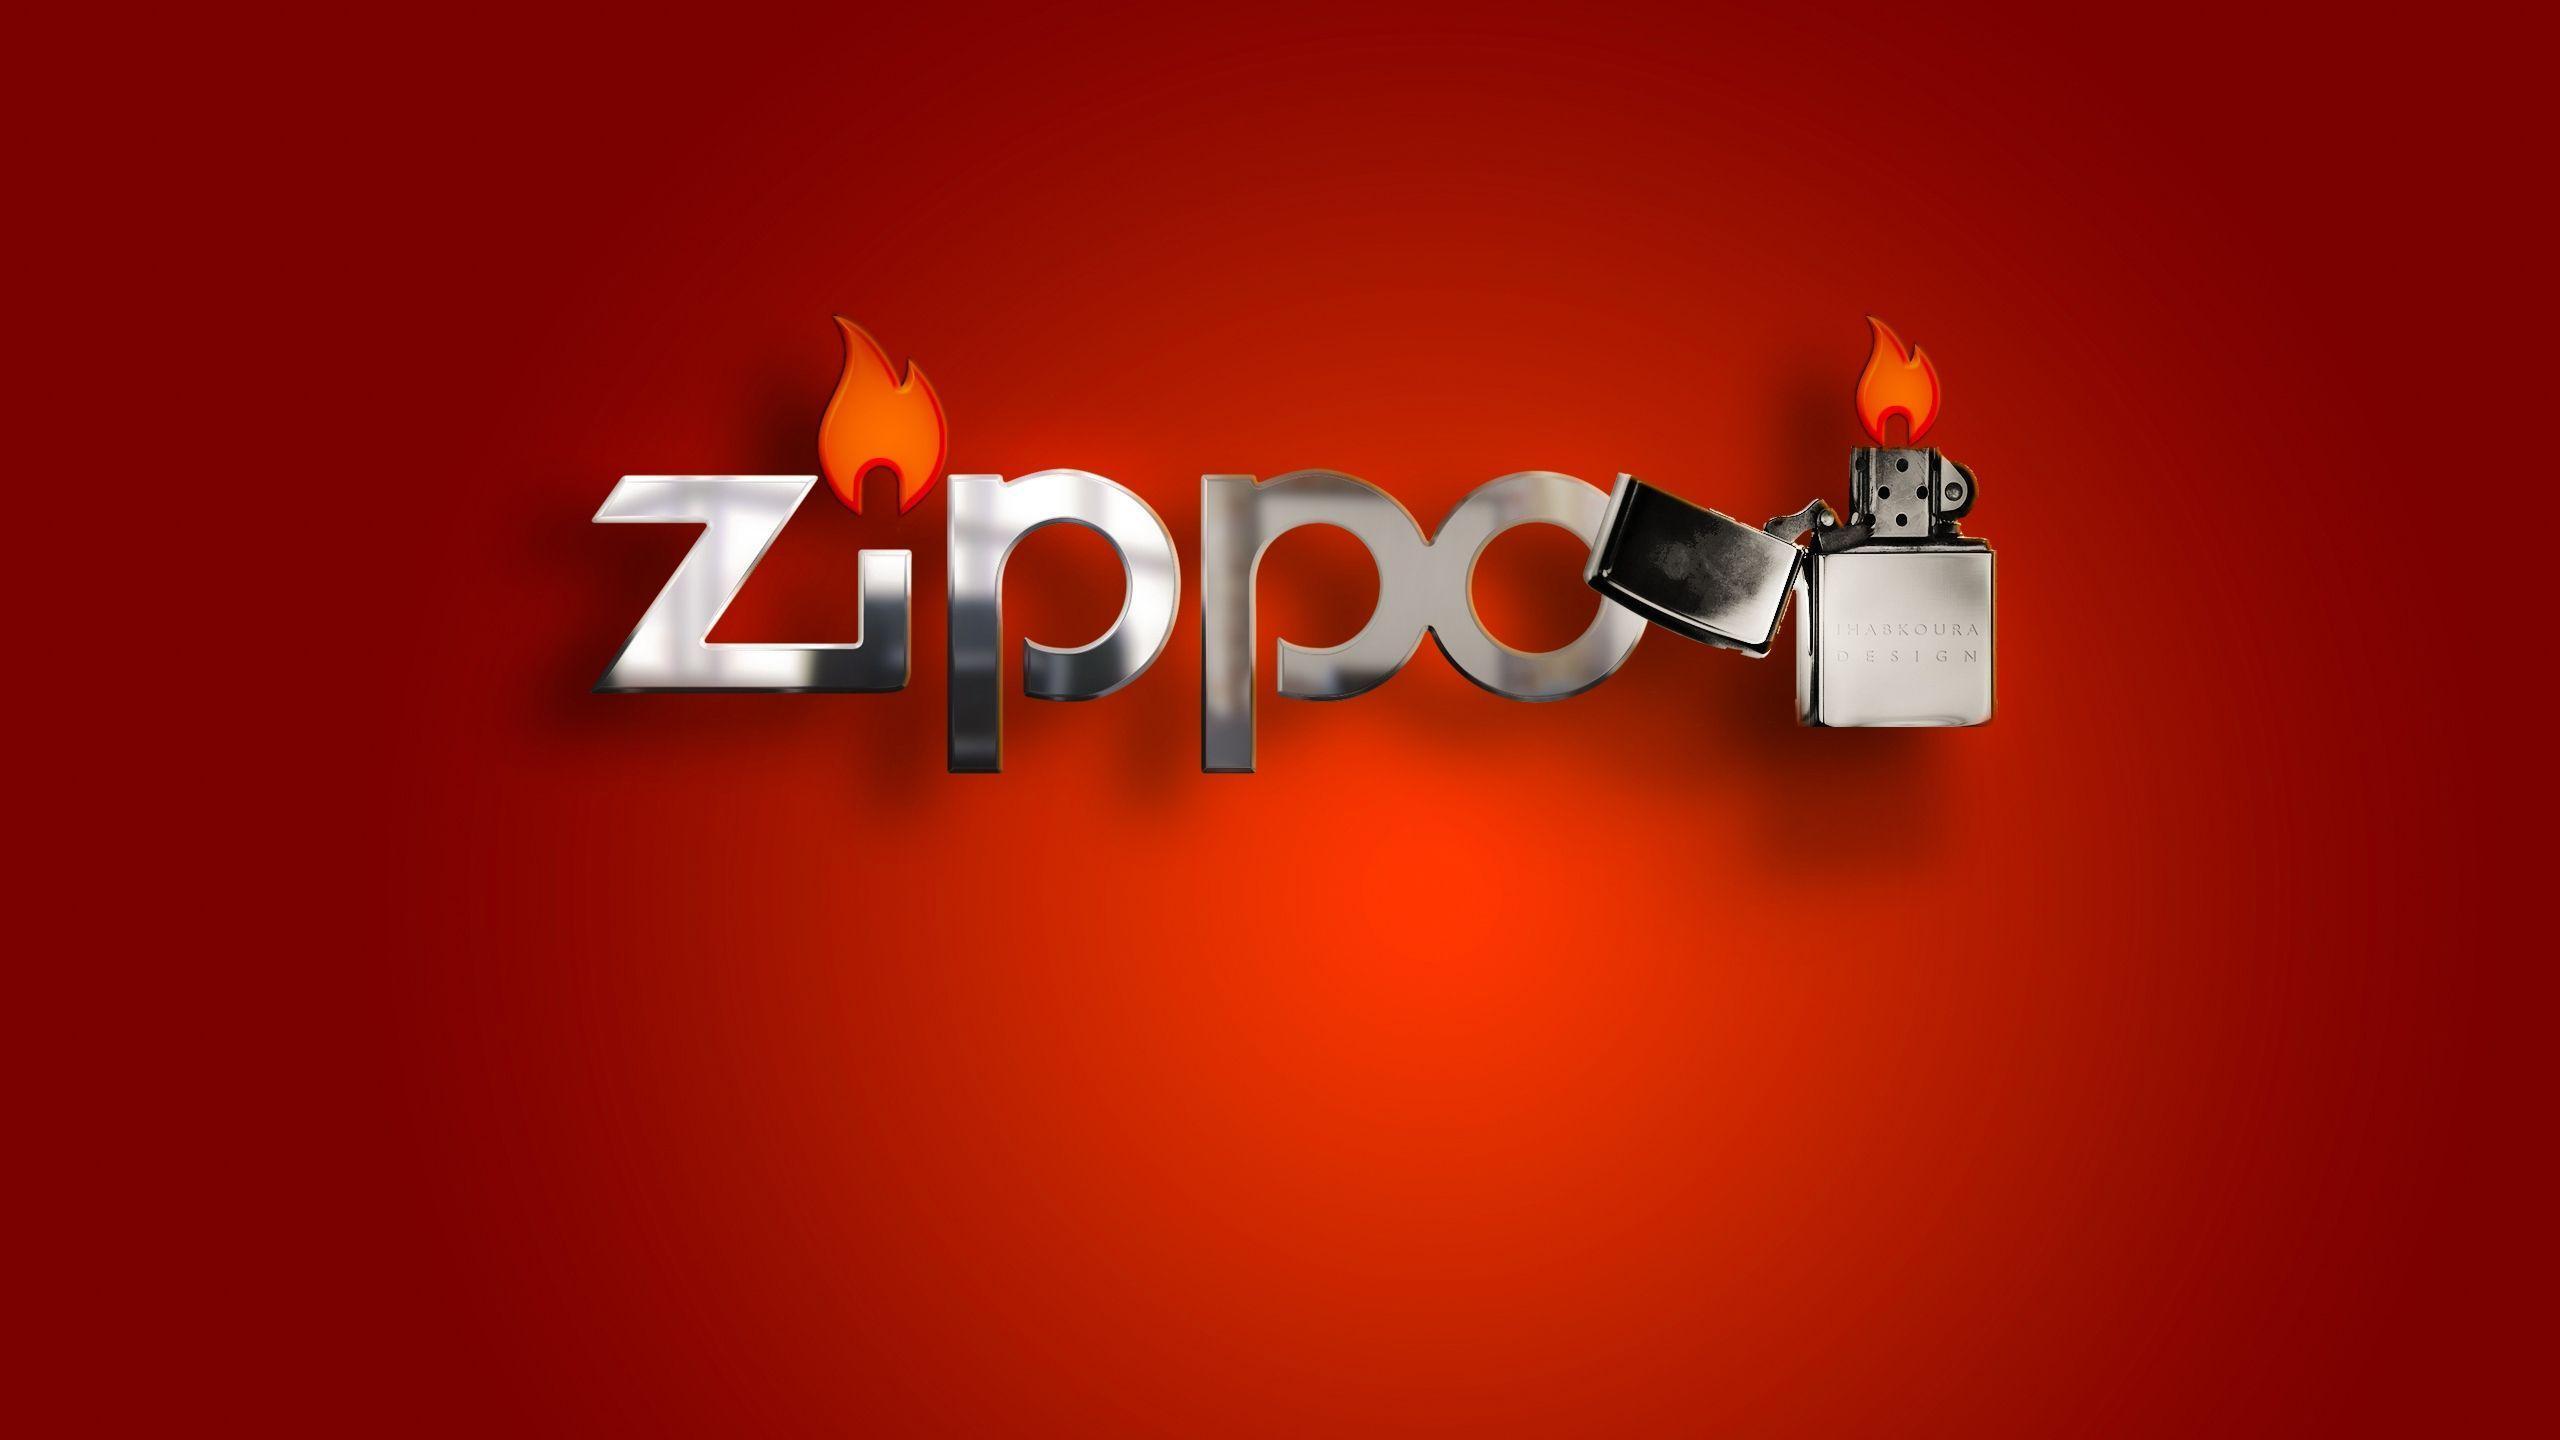 Zippo Lighter HD Wallpaper